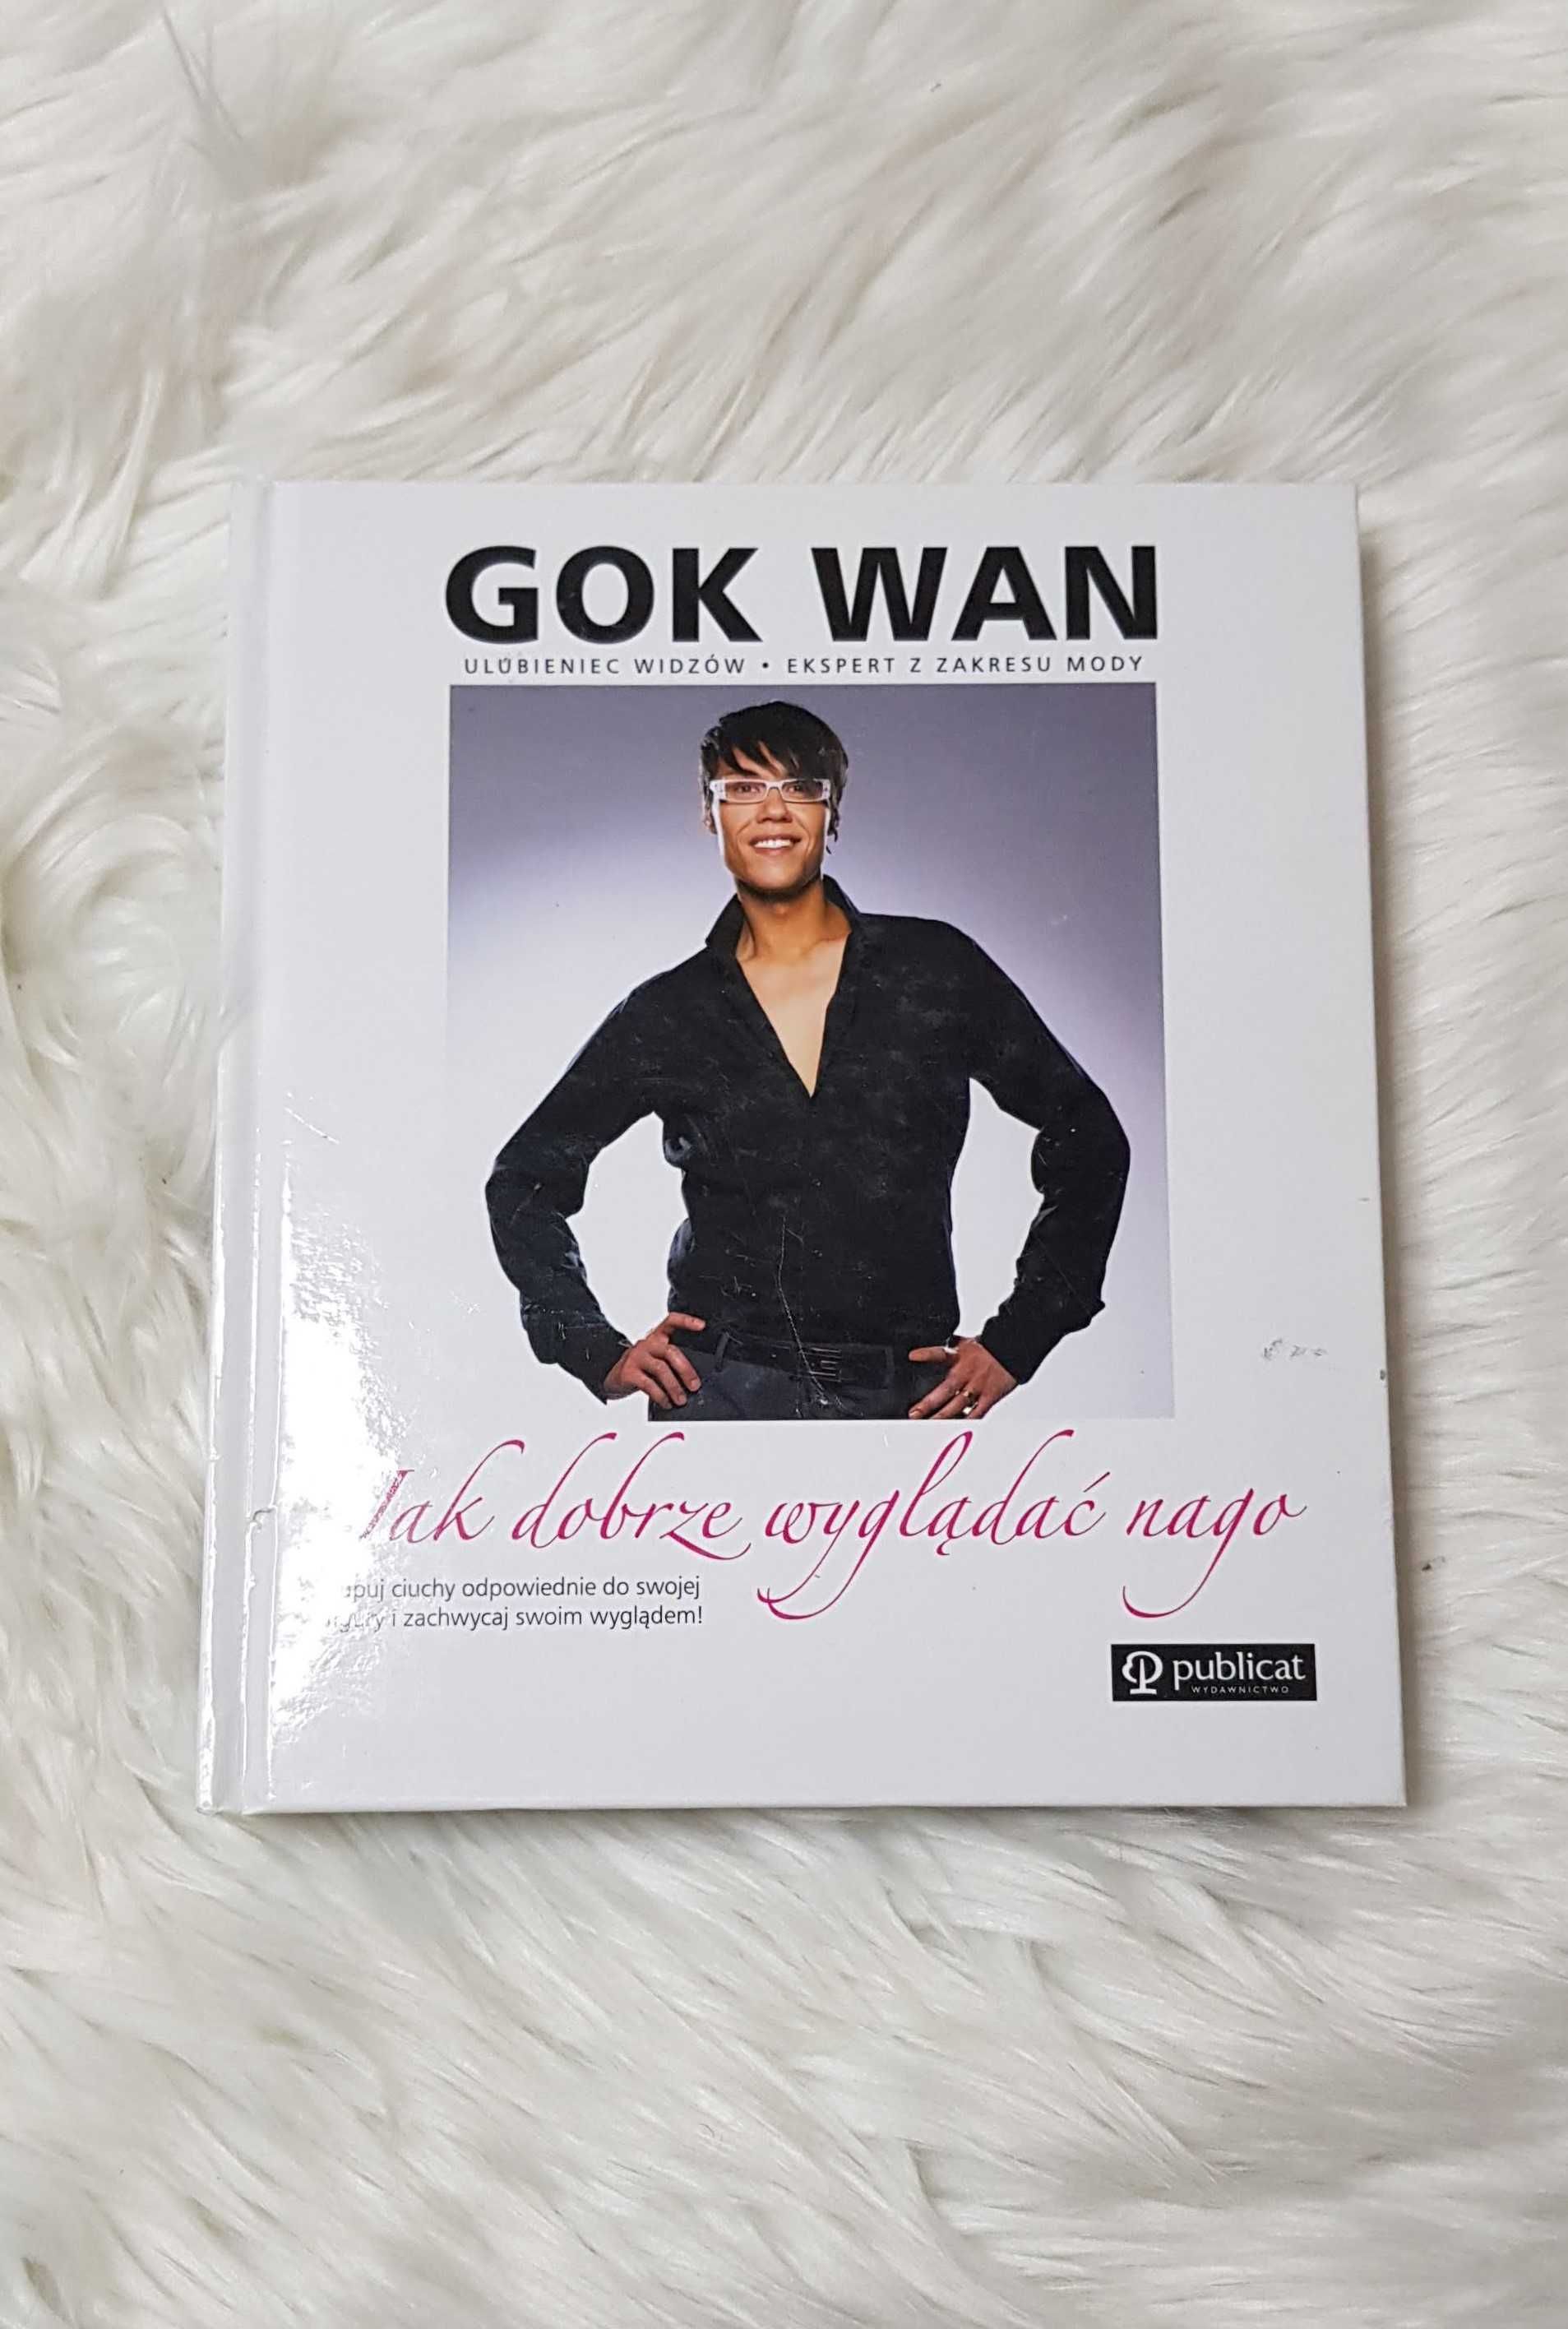 Gok Wan “Jak dobrze wyglądać nago” poradnik stylisty moda